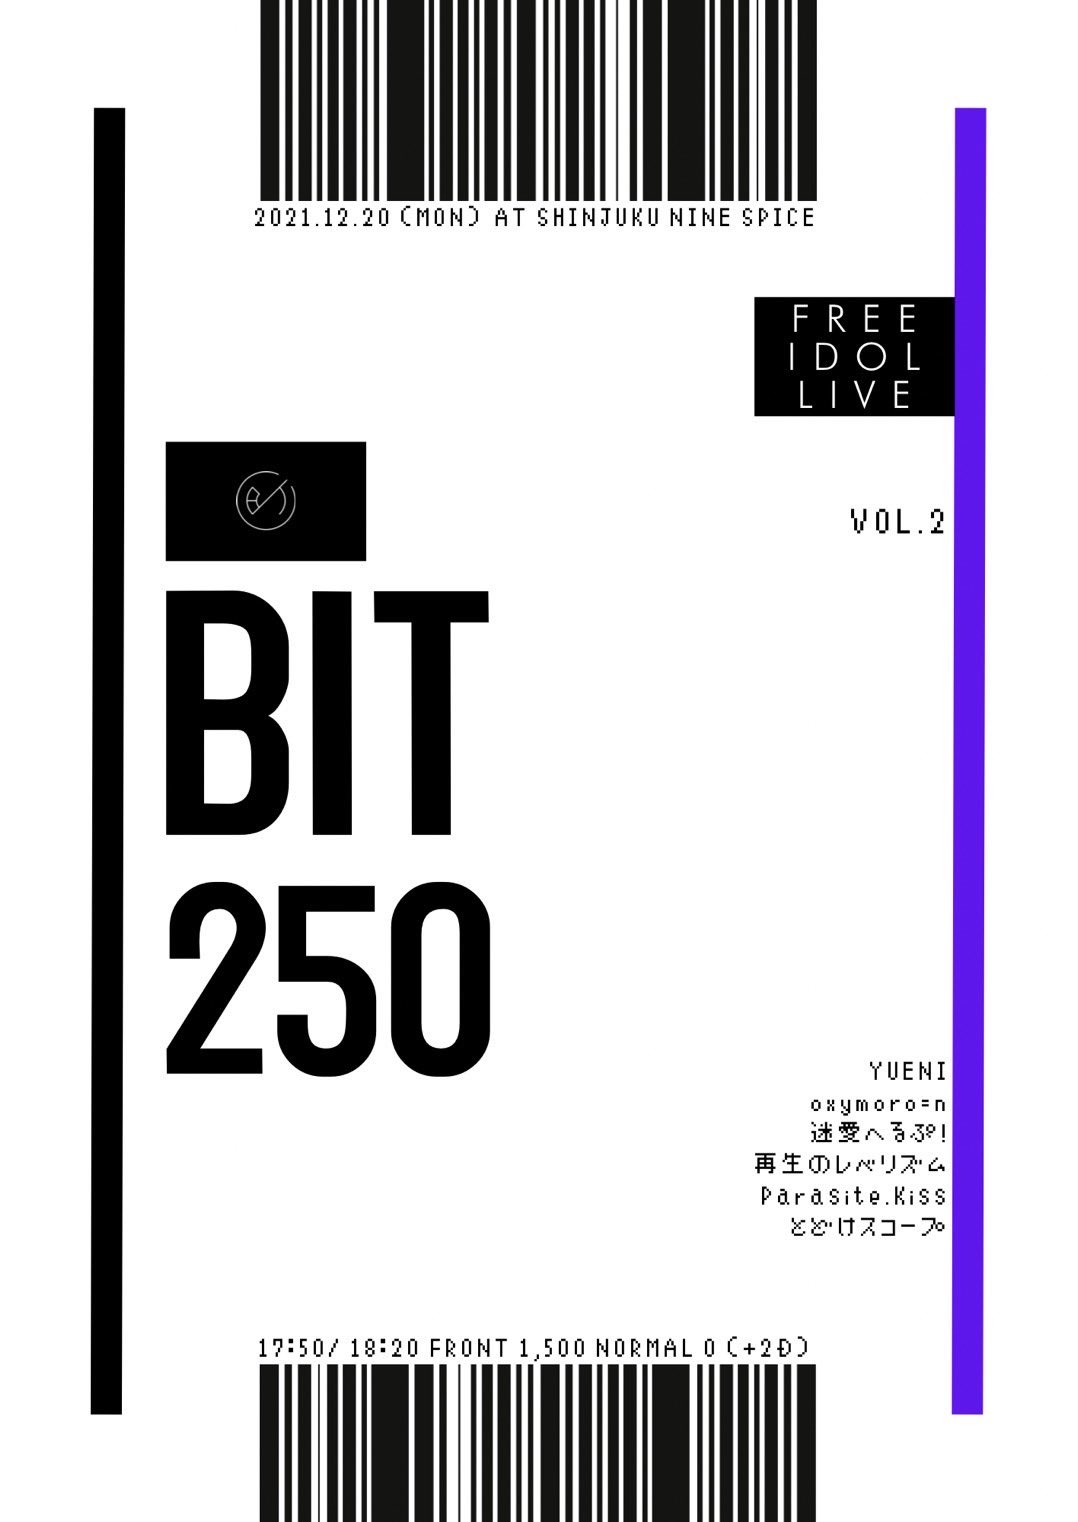 『BIT 250 vol.2』